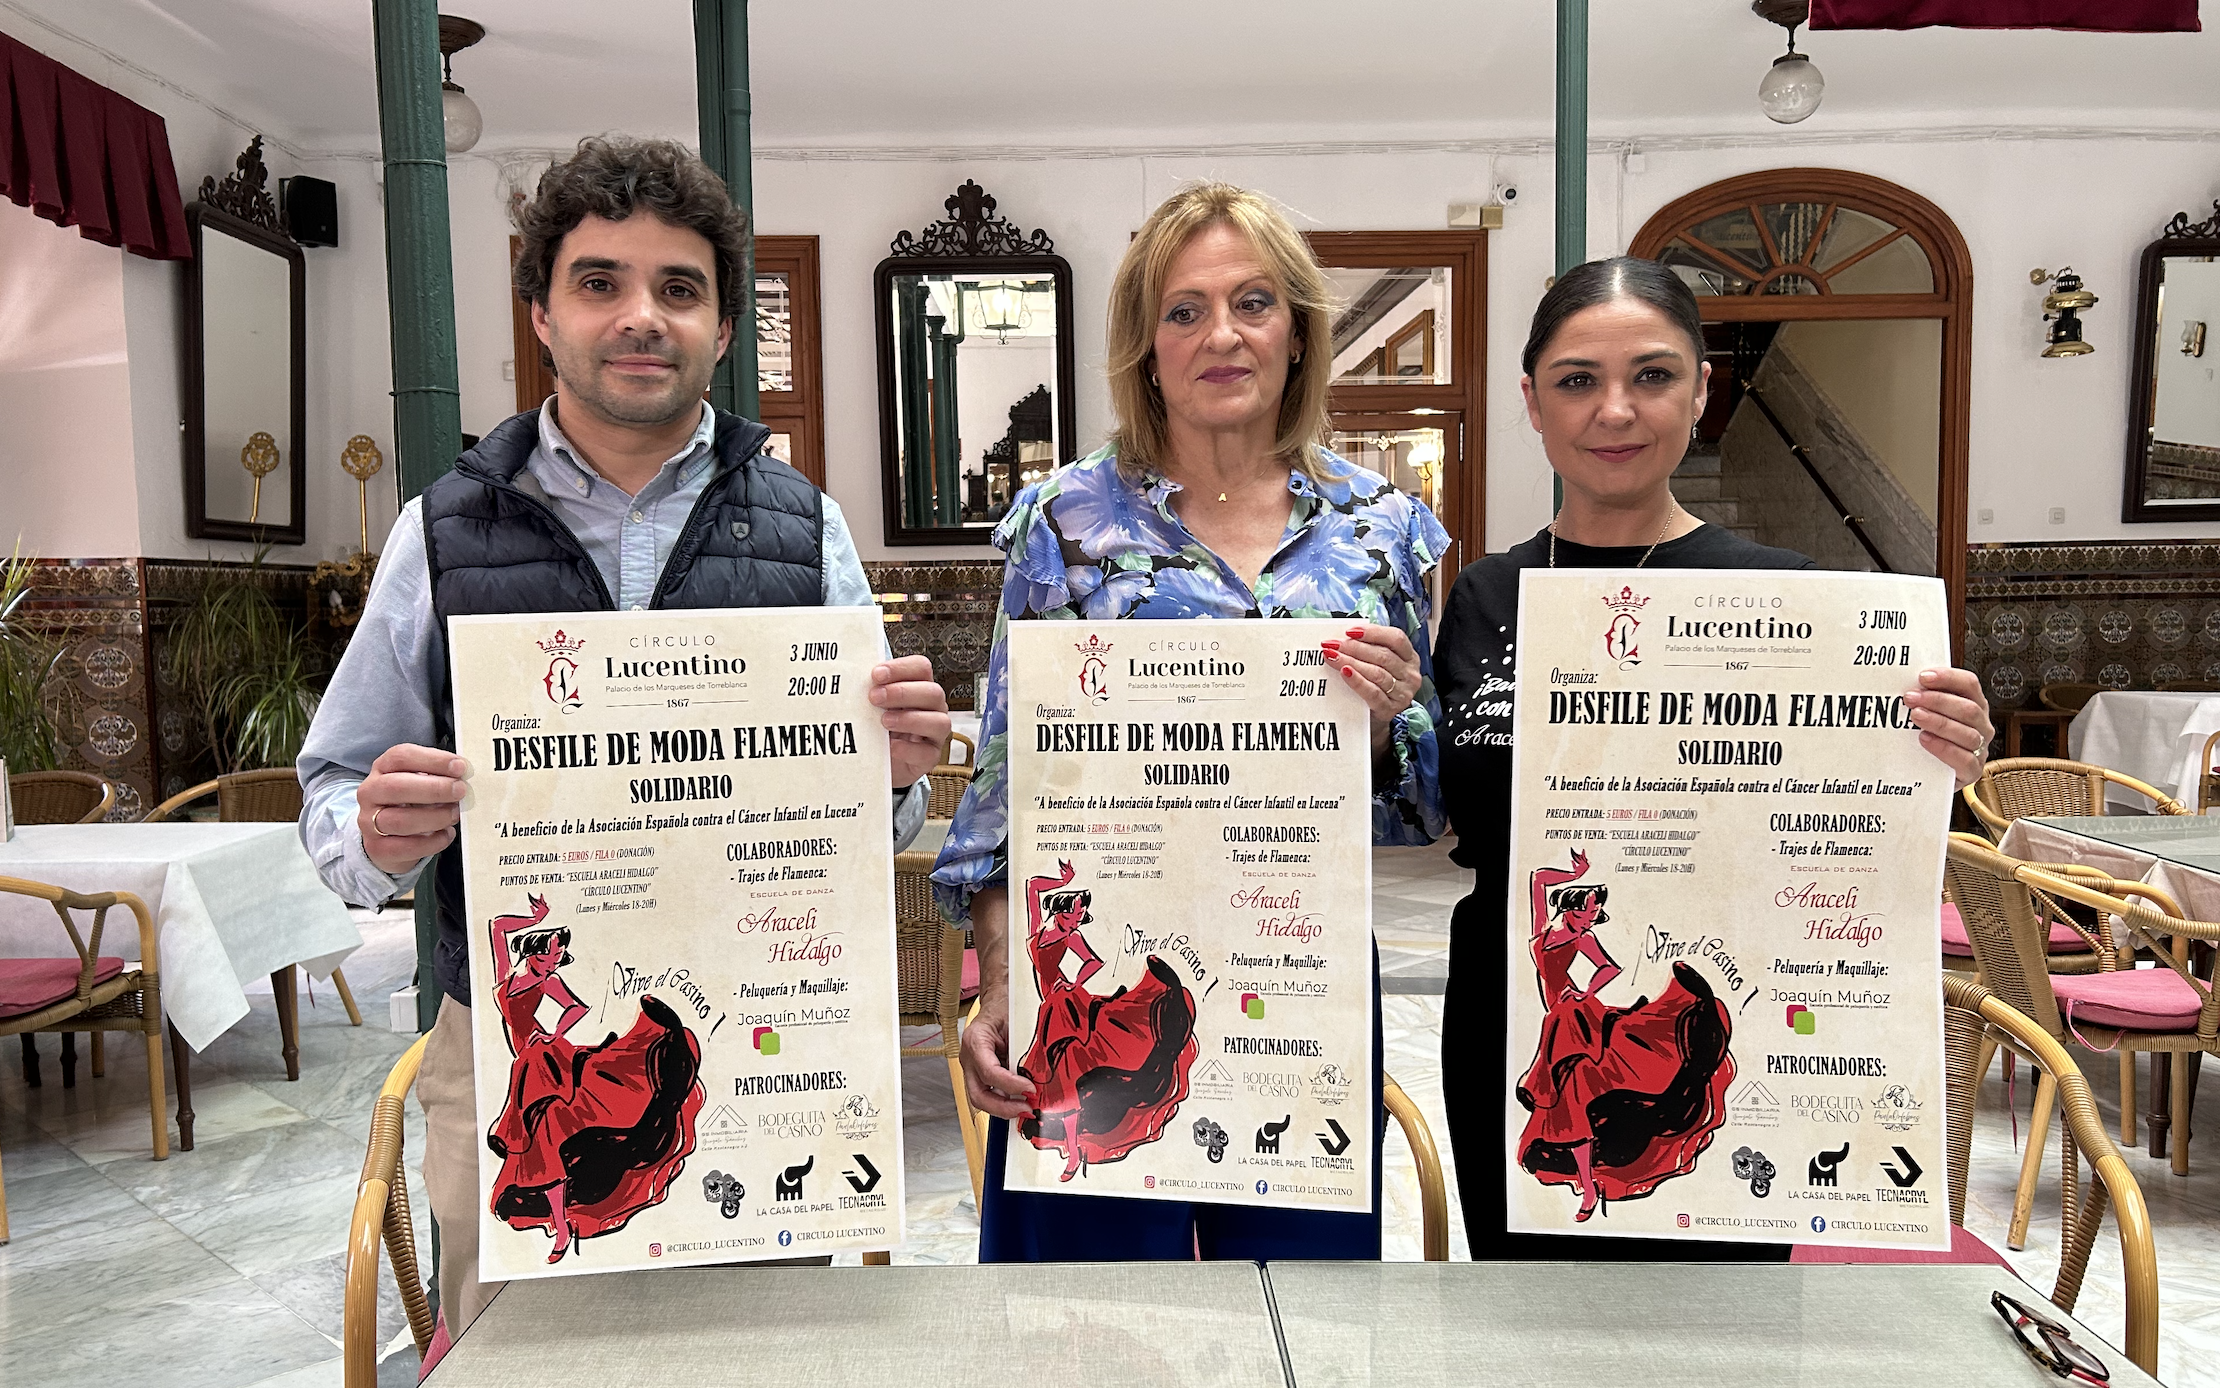 Manuel Barea, Araceli Chicano y Araceli Hidalgo muestran el cartel de este desfile de moda flamenca